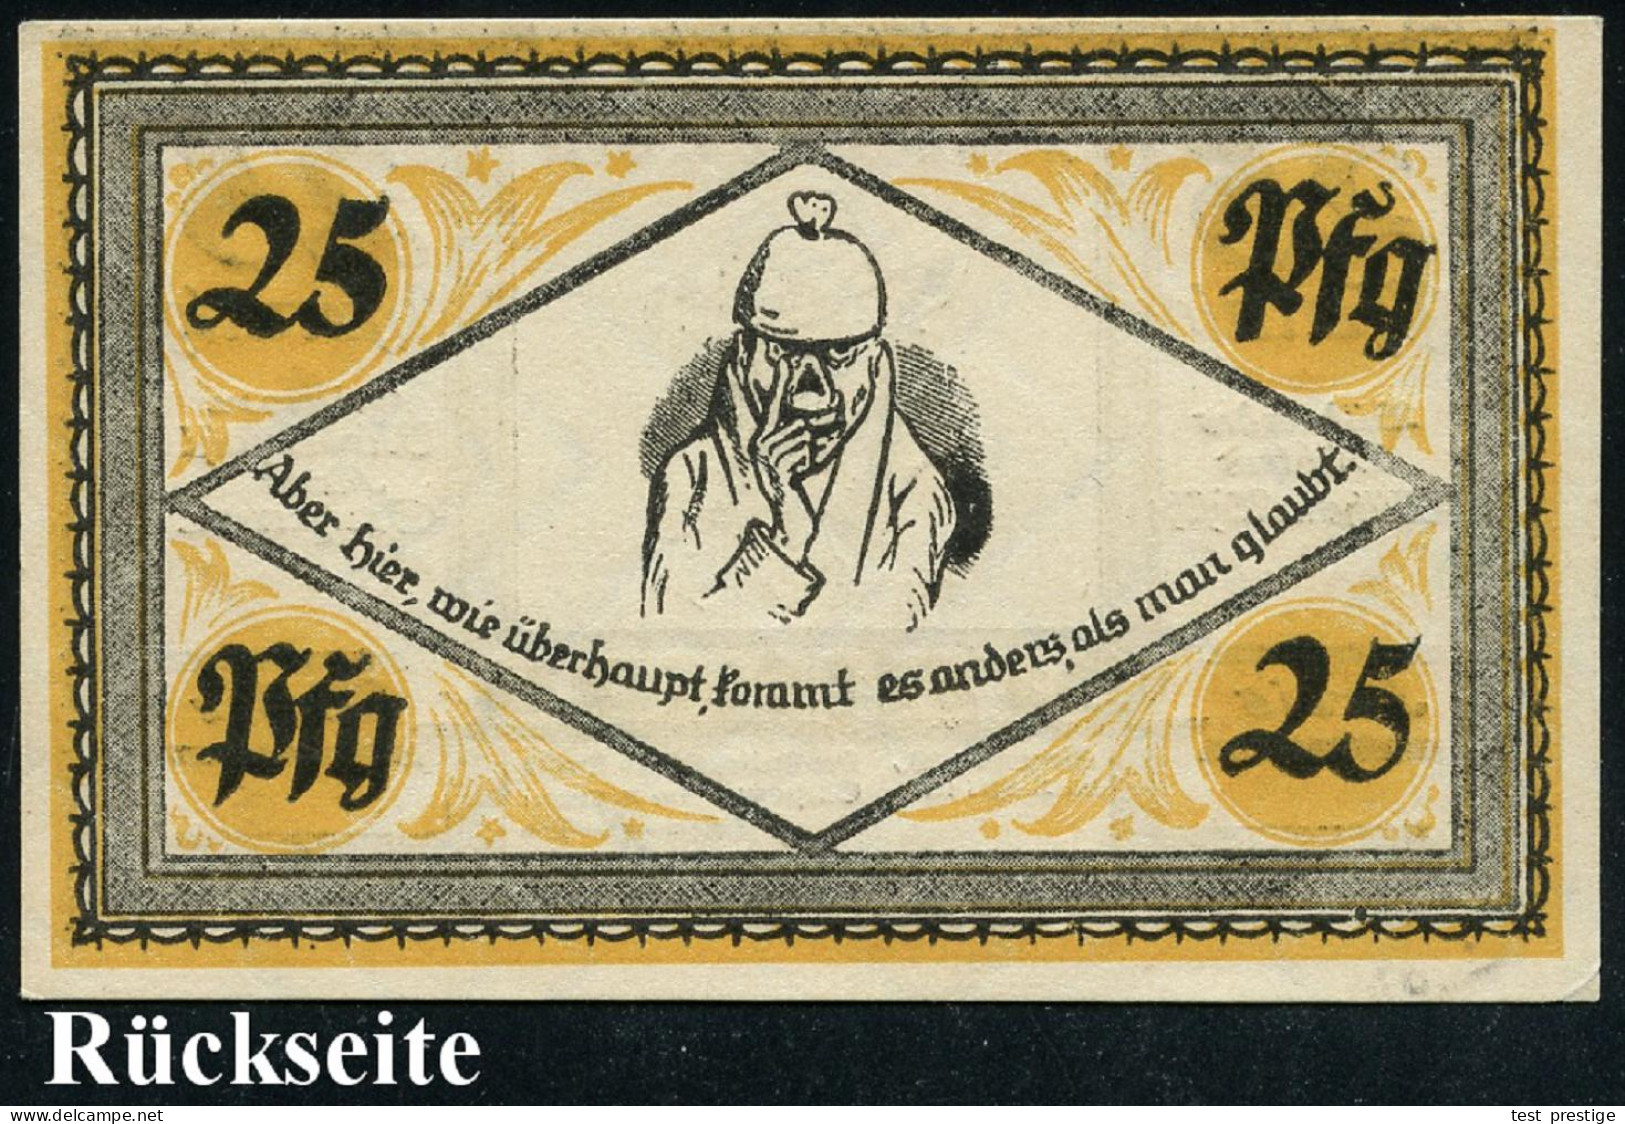 Stolzenau 1921 (Apr.) Infla-Notgeldschein 25 Pf. Mit Portrait Von Wilh. Busch (Selbstportrait Etc.) Bankfrisch - DEUTSCH - Ecrivains